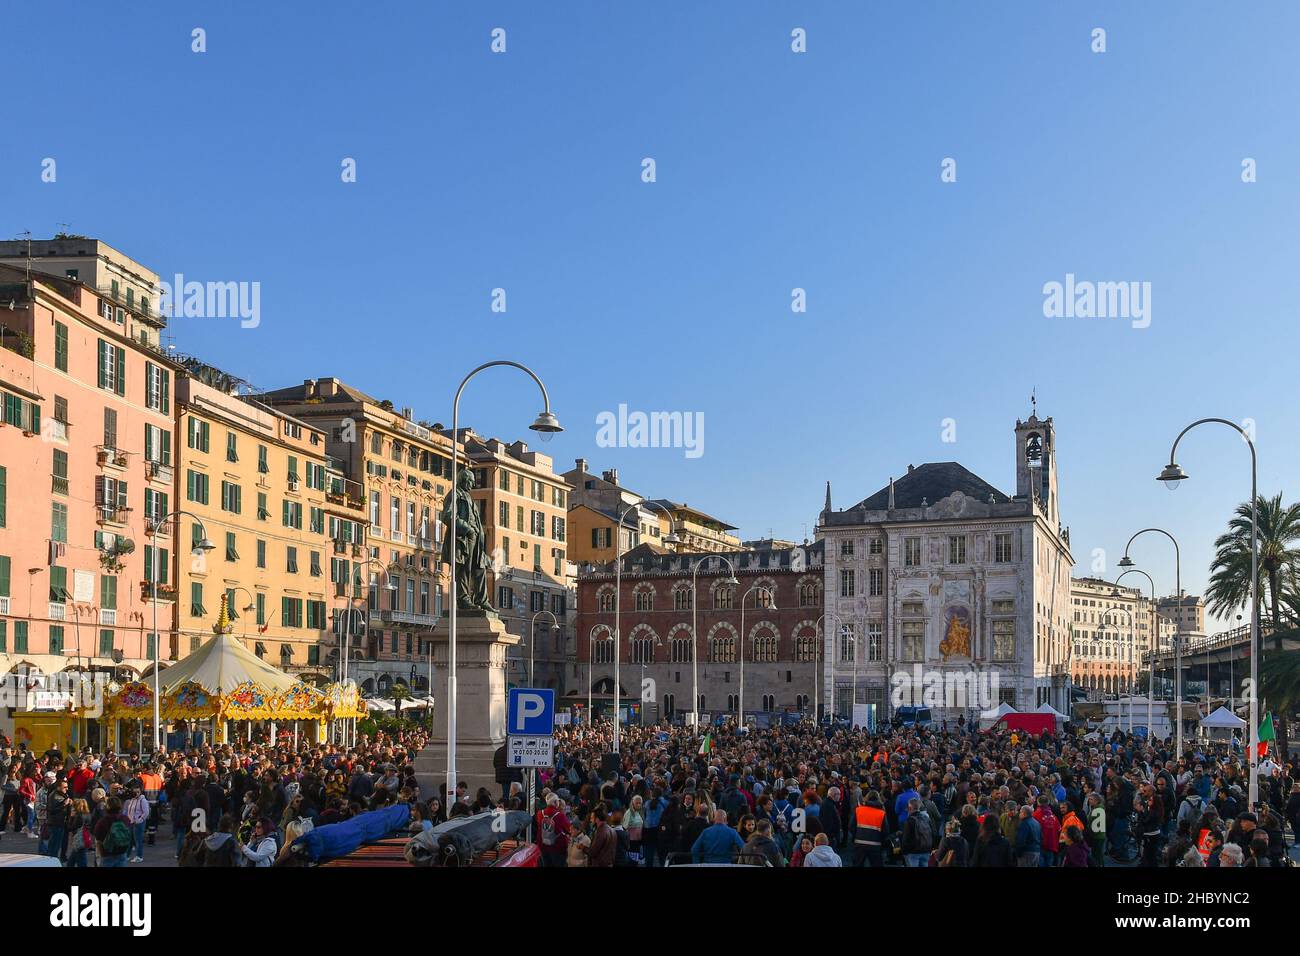 Genua, Ligurien, Italien - 10 23 2021: Menschenmenge bei einer Protestkundgebung ohne Green Pass auf der Piazza Caricamento mit dem Palazzo San Giorgio im Hintergrund Stockfoto